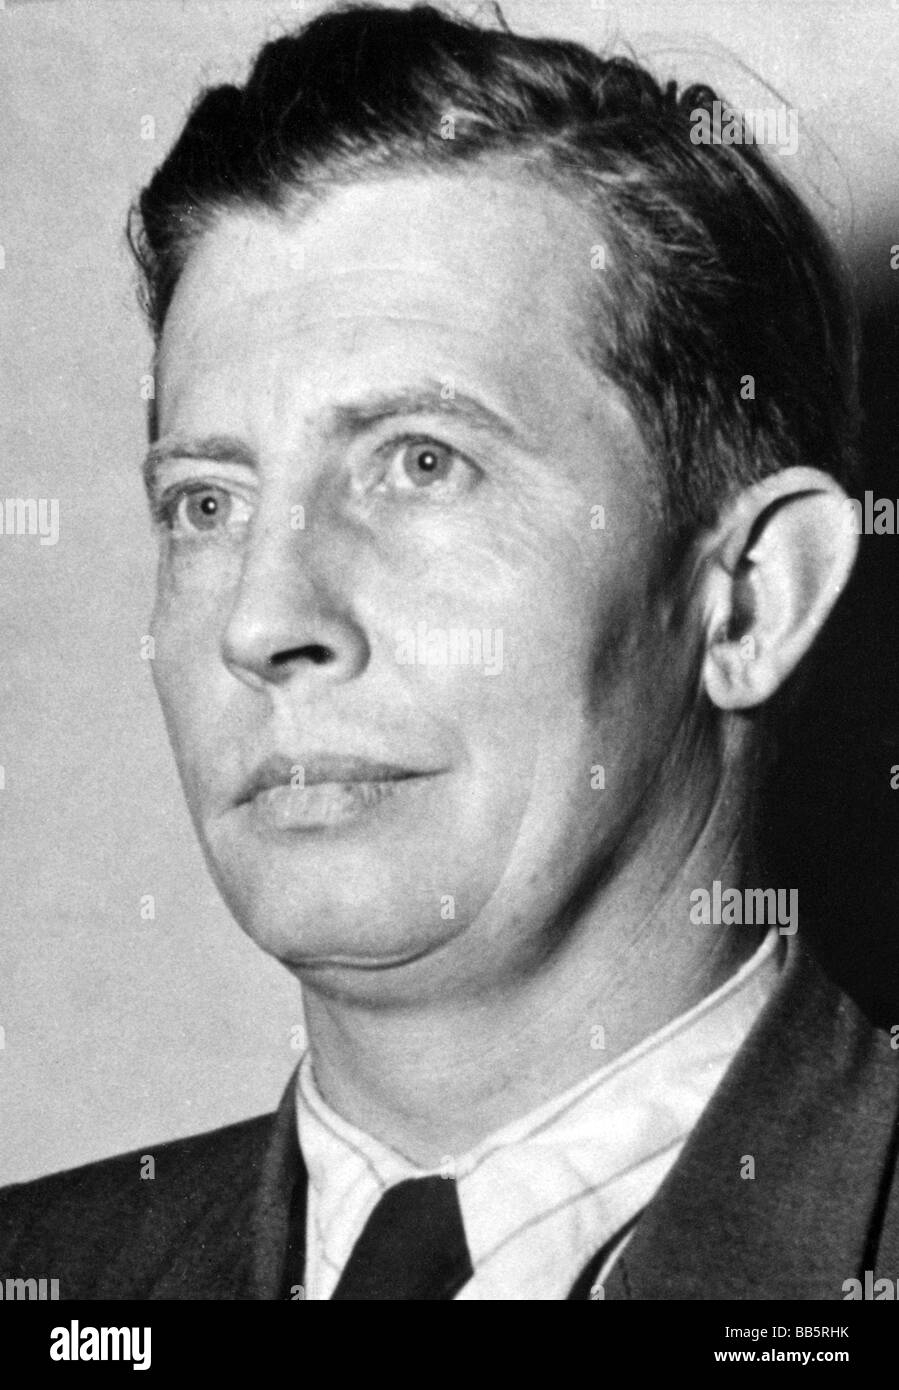 Stain, Walter, 27.12.1916 - 3.2.2001, deutscher Politiker (GB/BHE), Bayerischer Minister für Arbeit und Soziales 1954 - 1962, Porträt, 1957, Stockfoto